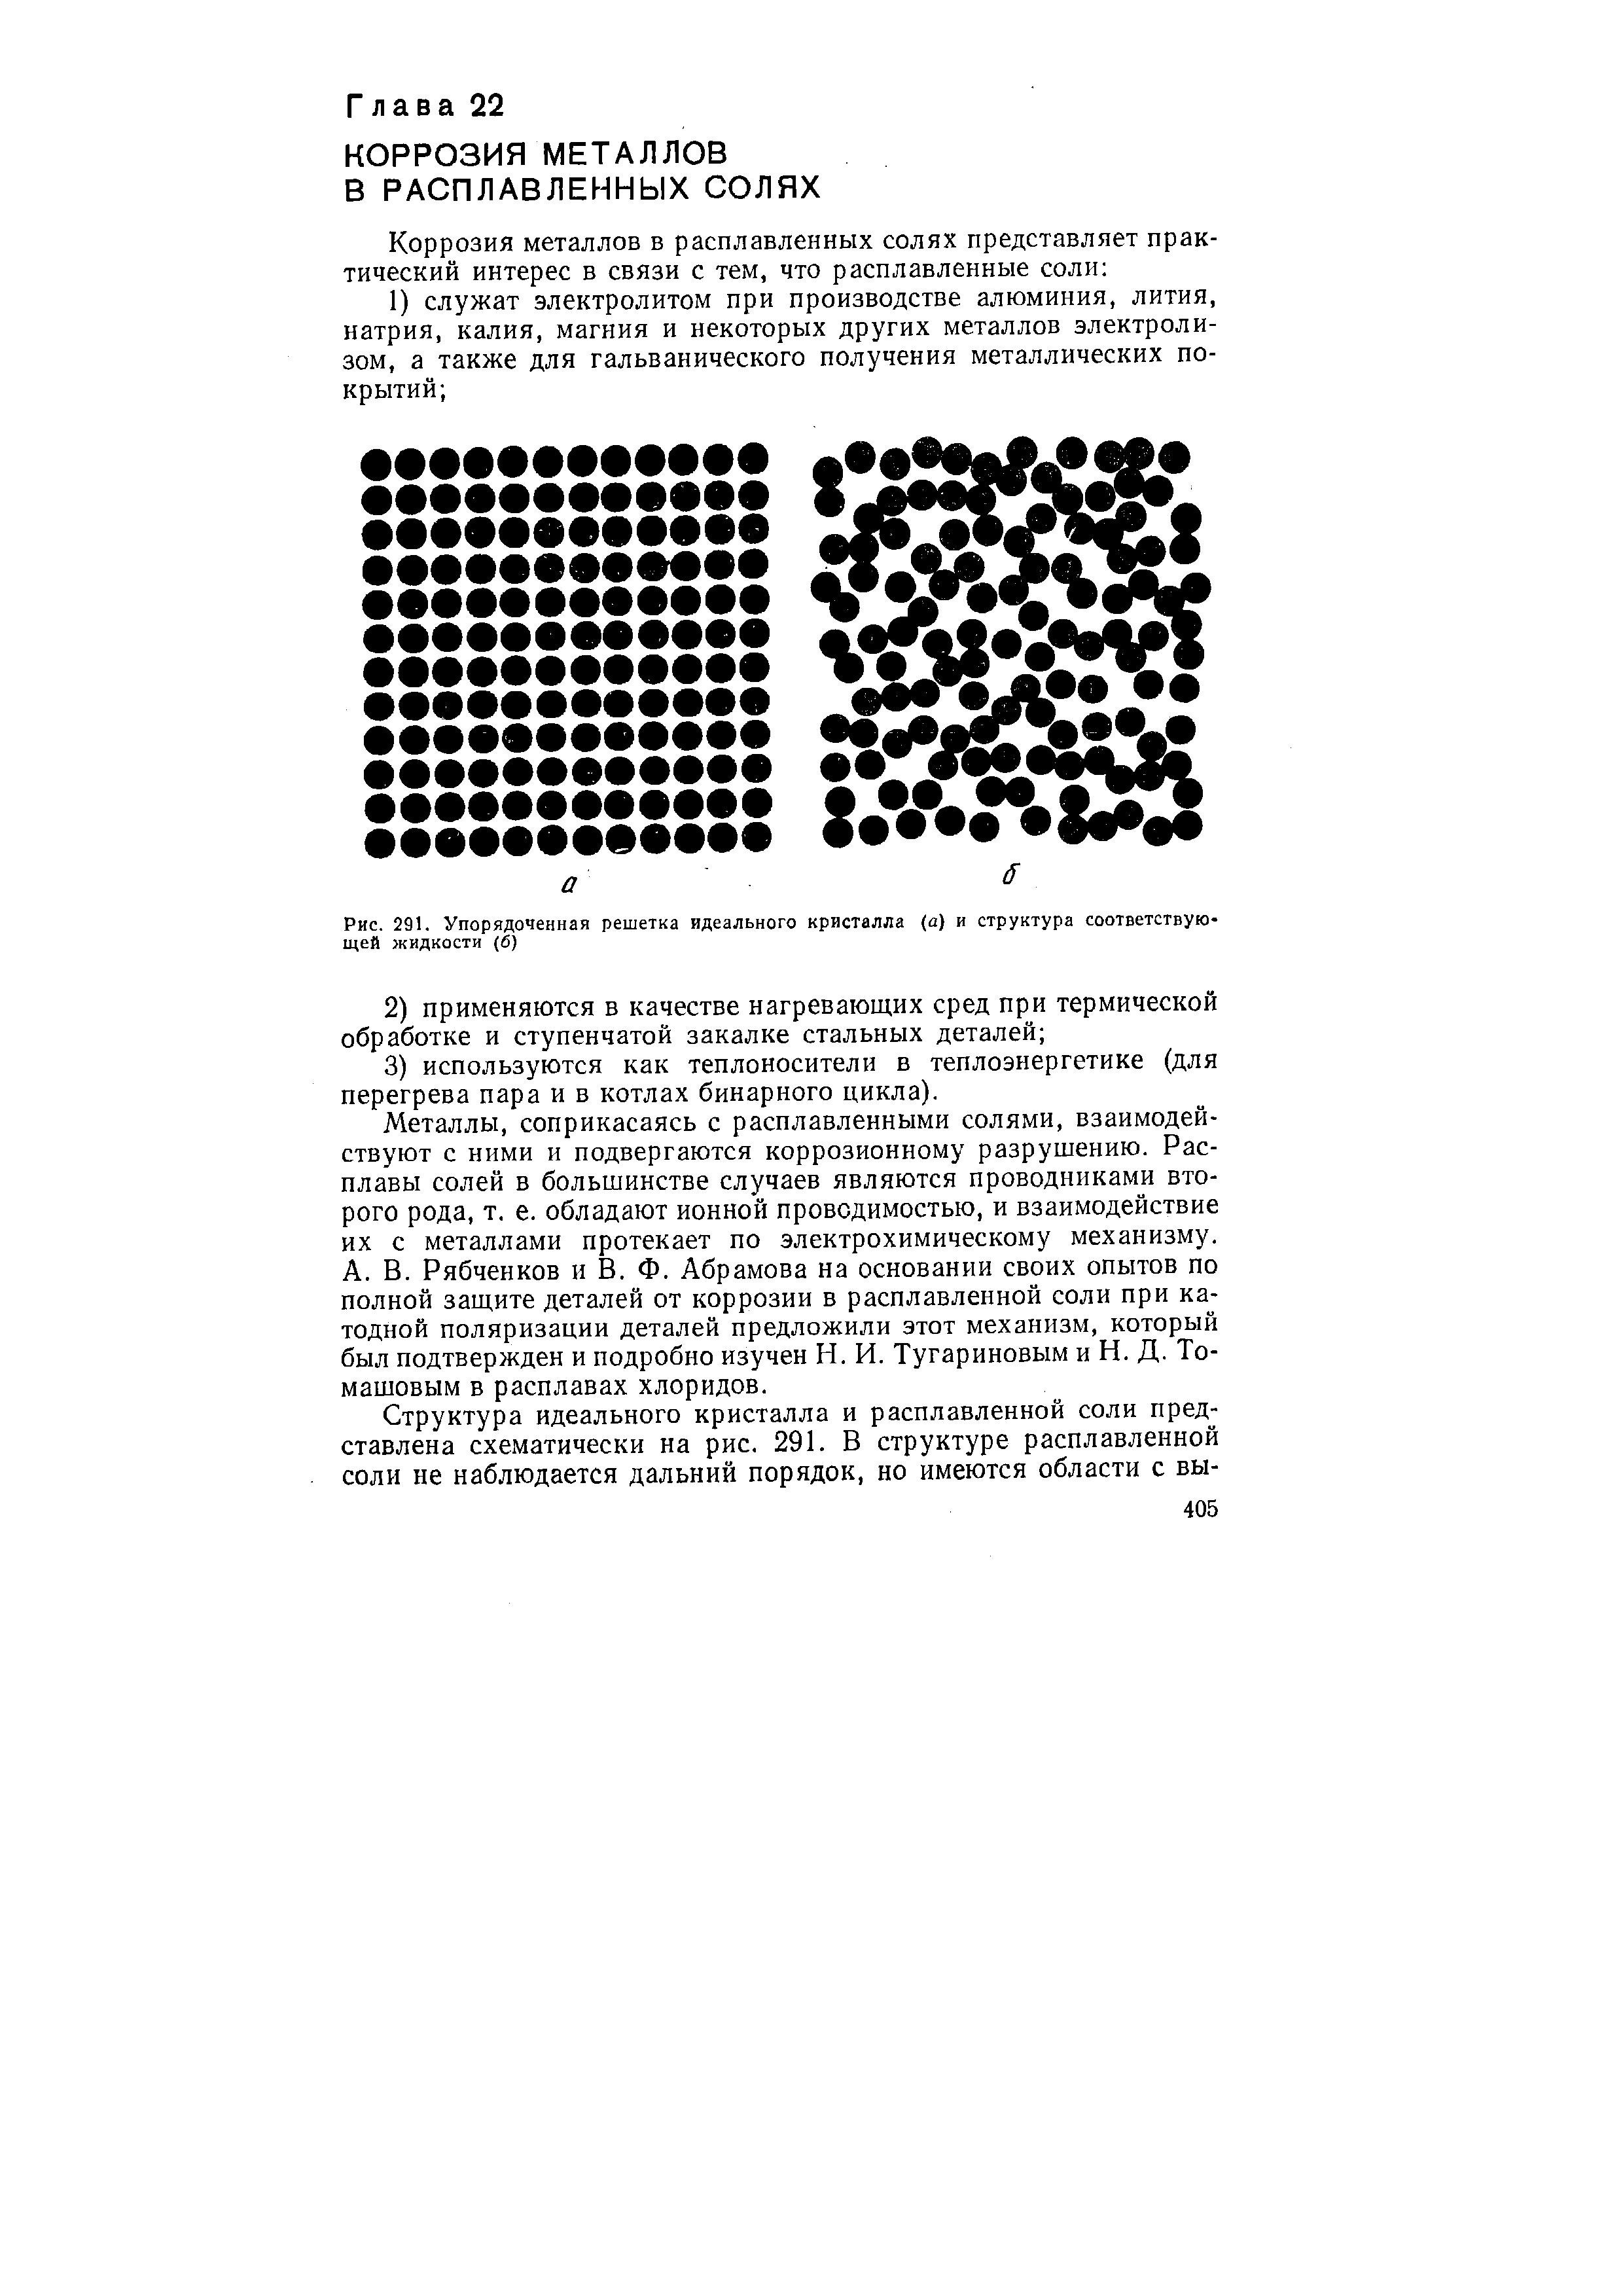 Рис. 291, Упорядоченная решетка идеального кристалла (а) и структура соответствующей жидкости (б)
